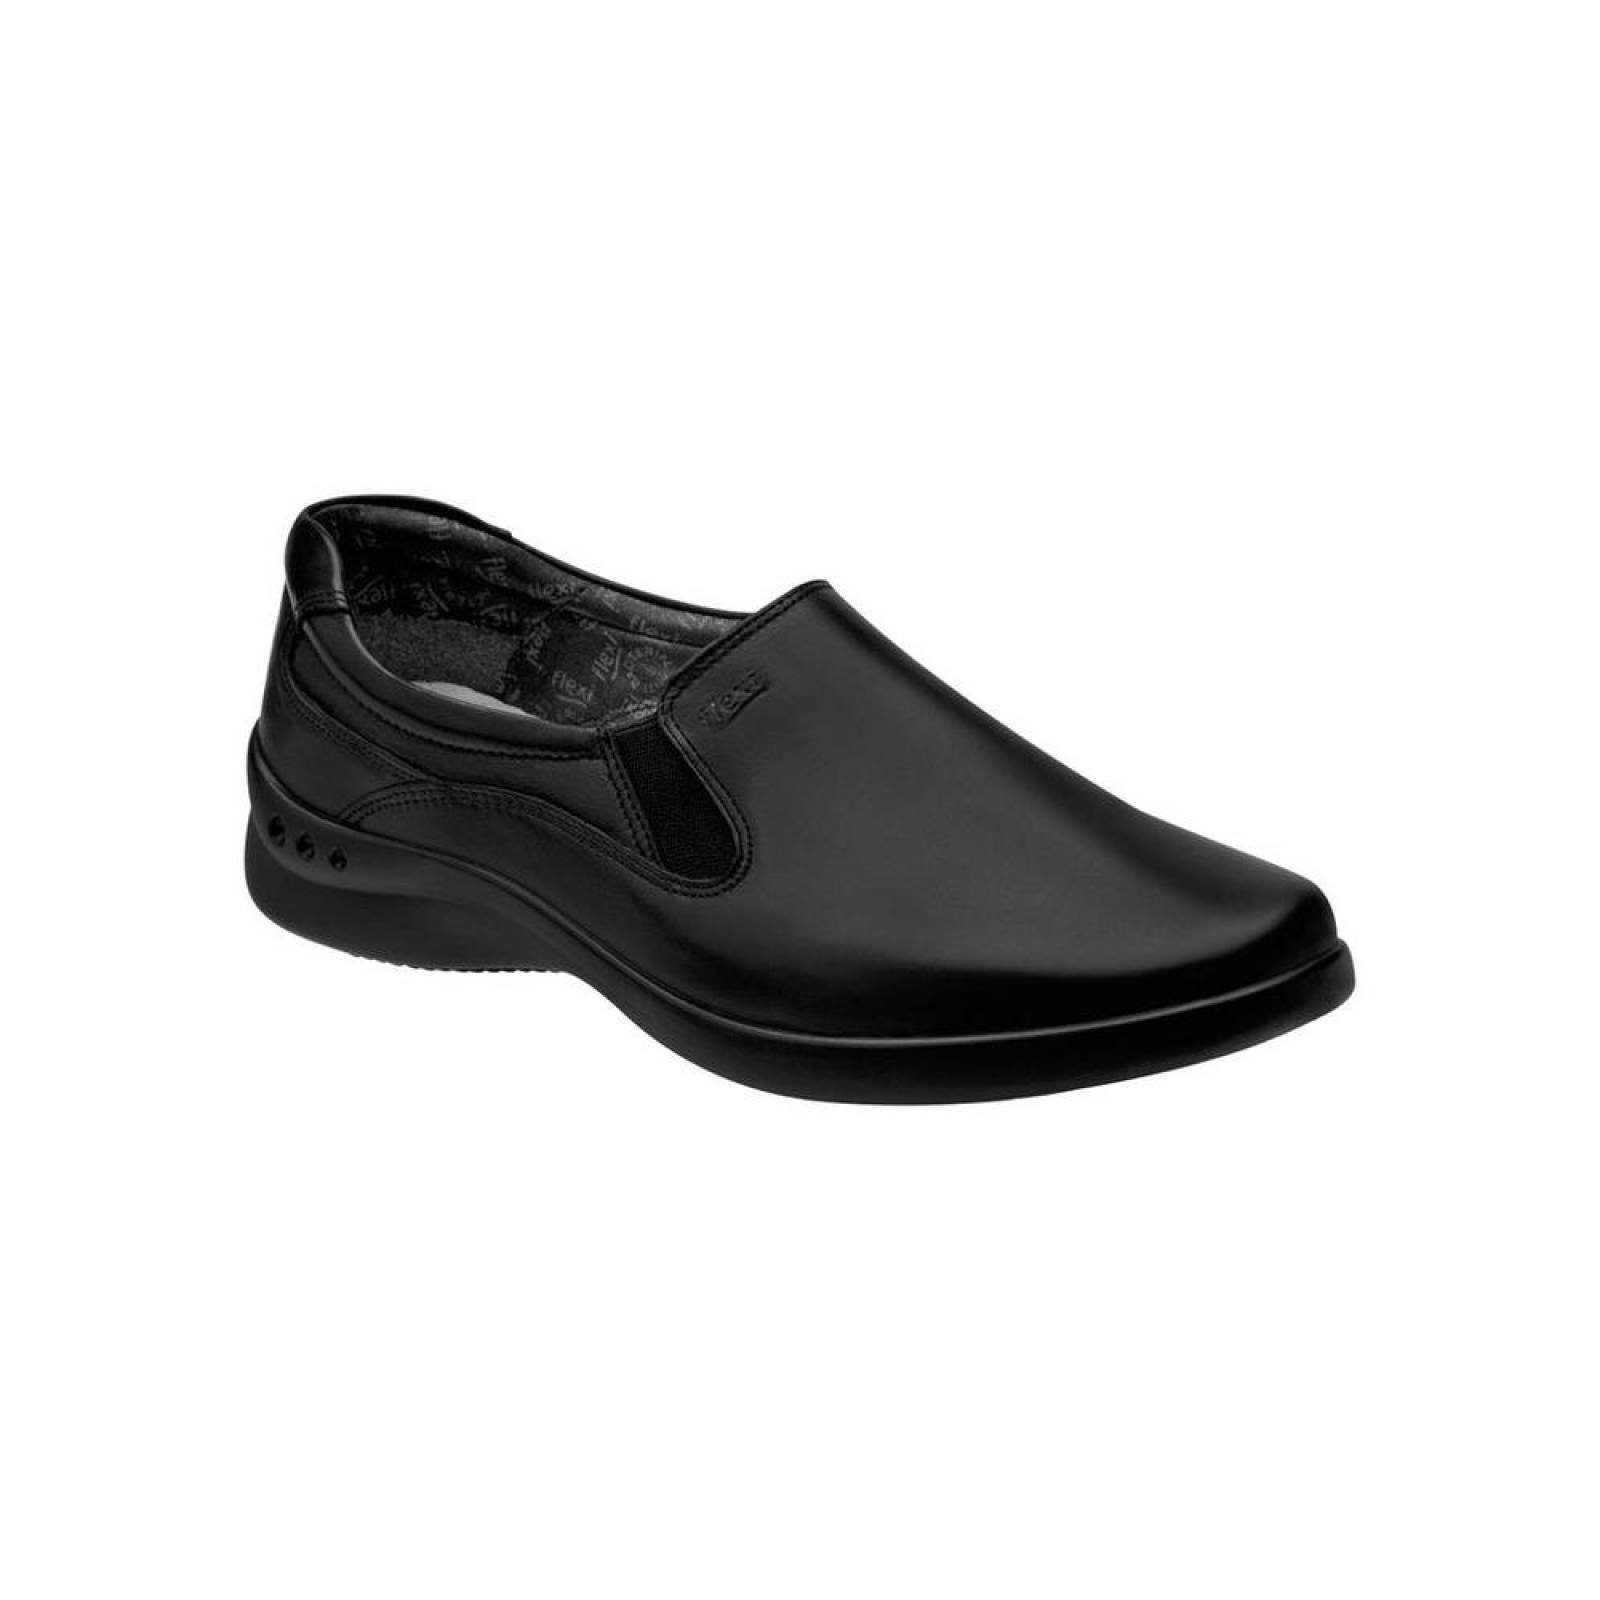 Zapato Confort Mujer Flexi Negro 02500511 Piel 